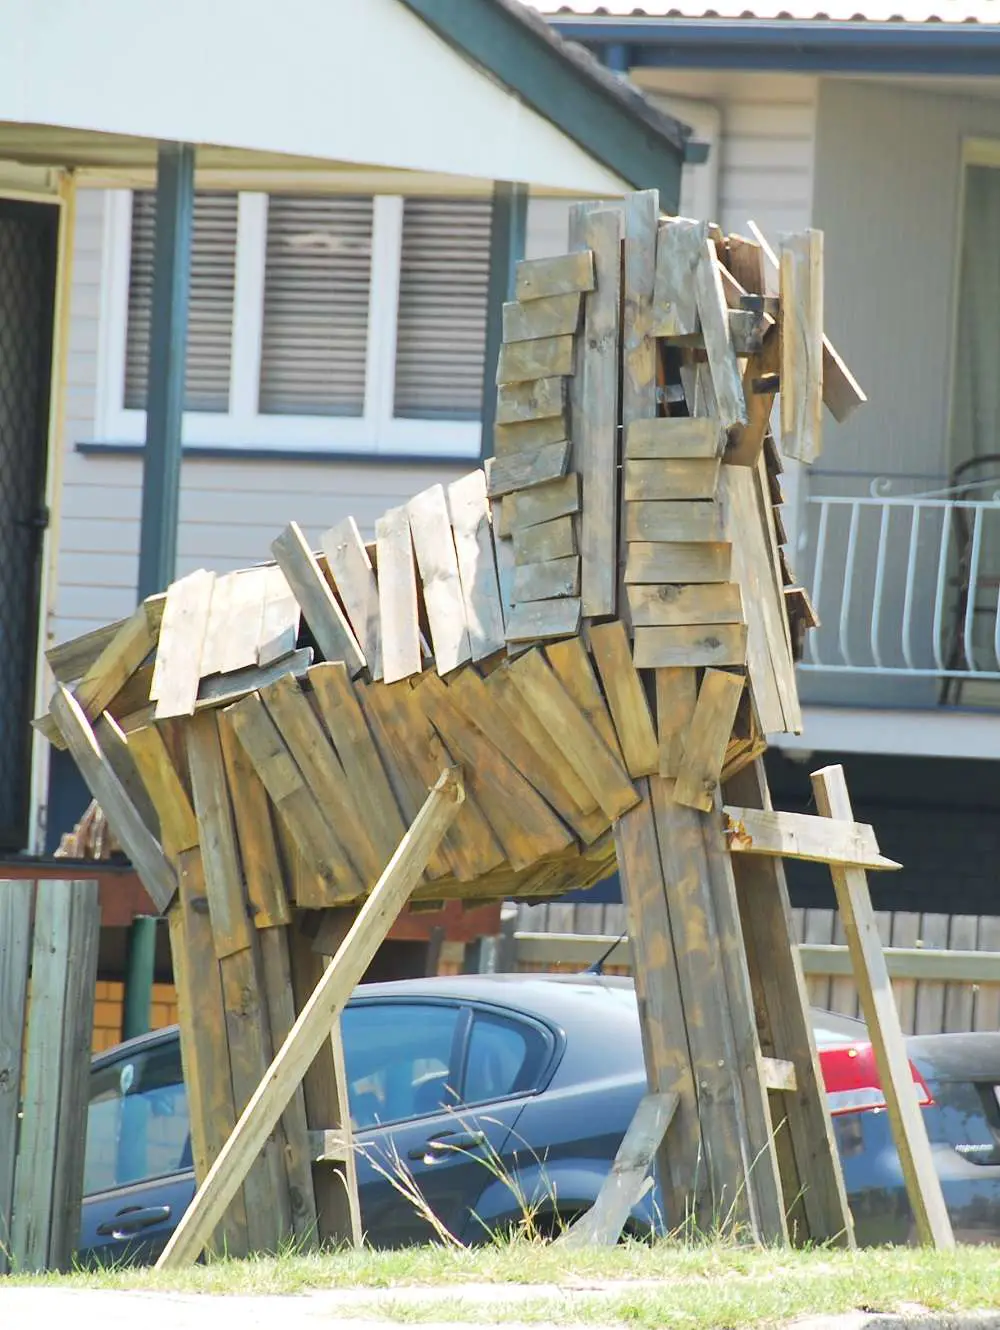 Greek Mythology | Australia Travel Blog | Greek Mythology - The Trojan Horse. In Someone'S Front Yard... | Australia Travel Blog | Author: Anthony Bianco - The Travel Tart Blog